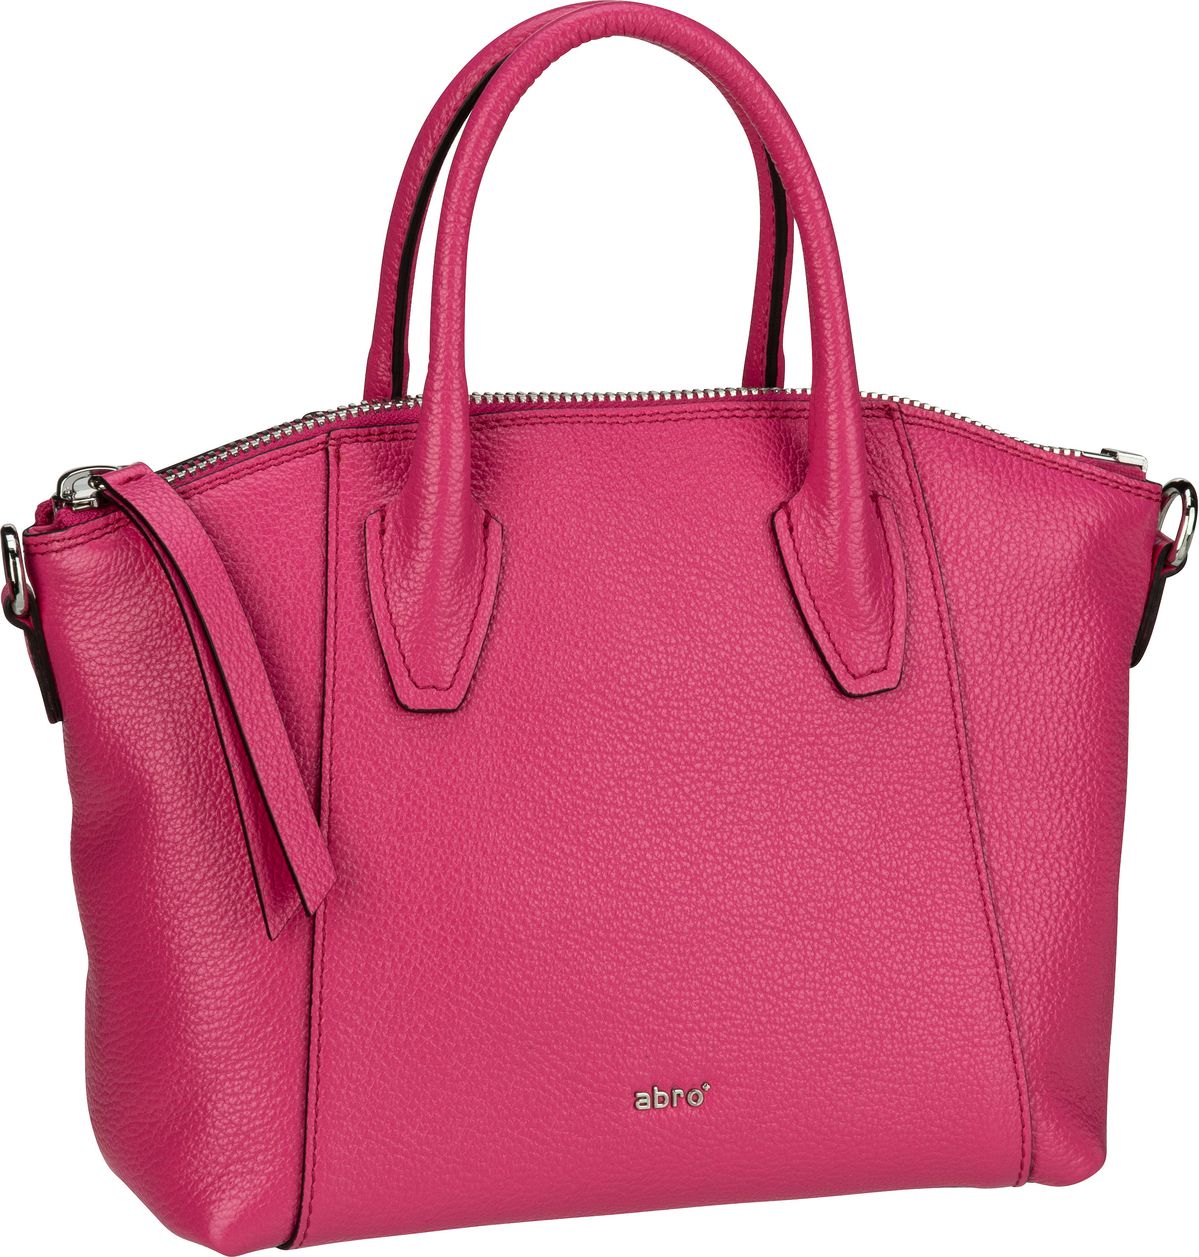 abro Ivy 30238  in Pink (6.2 Liter), Handtasche